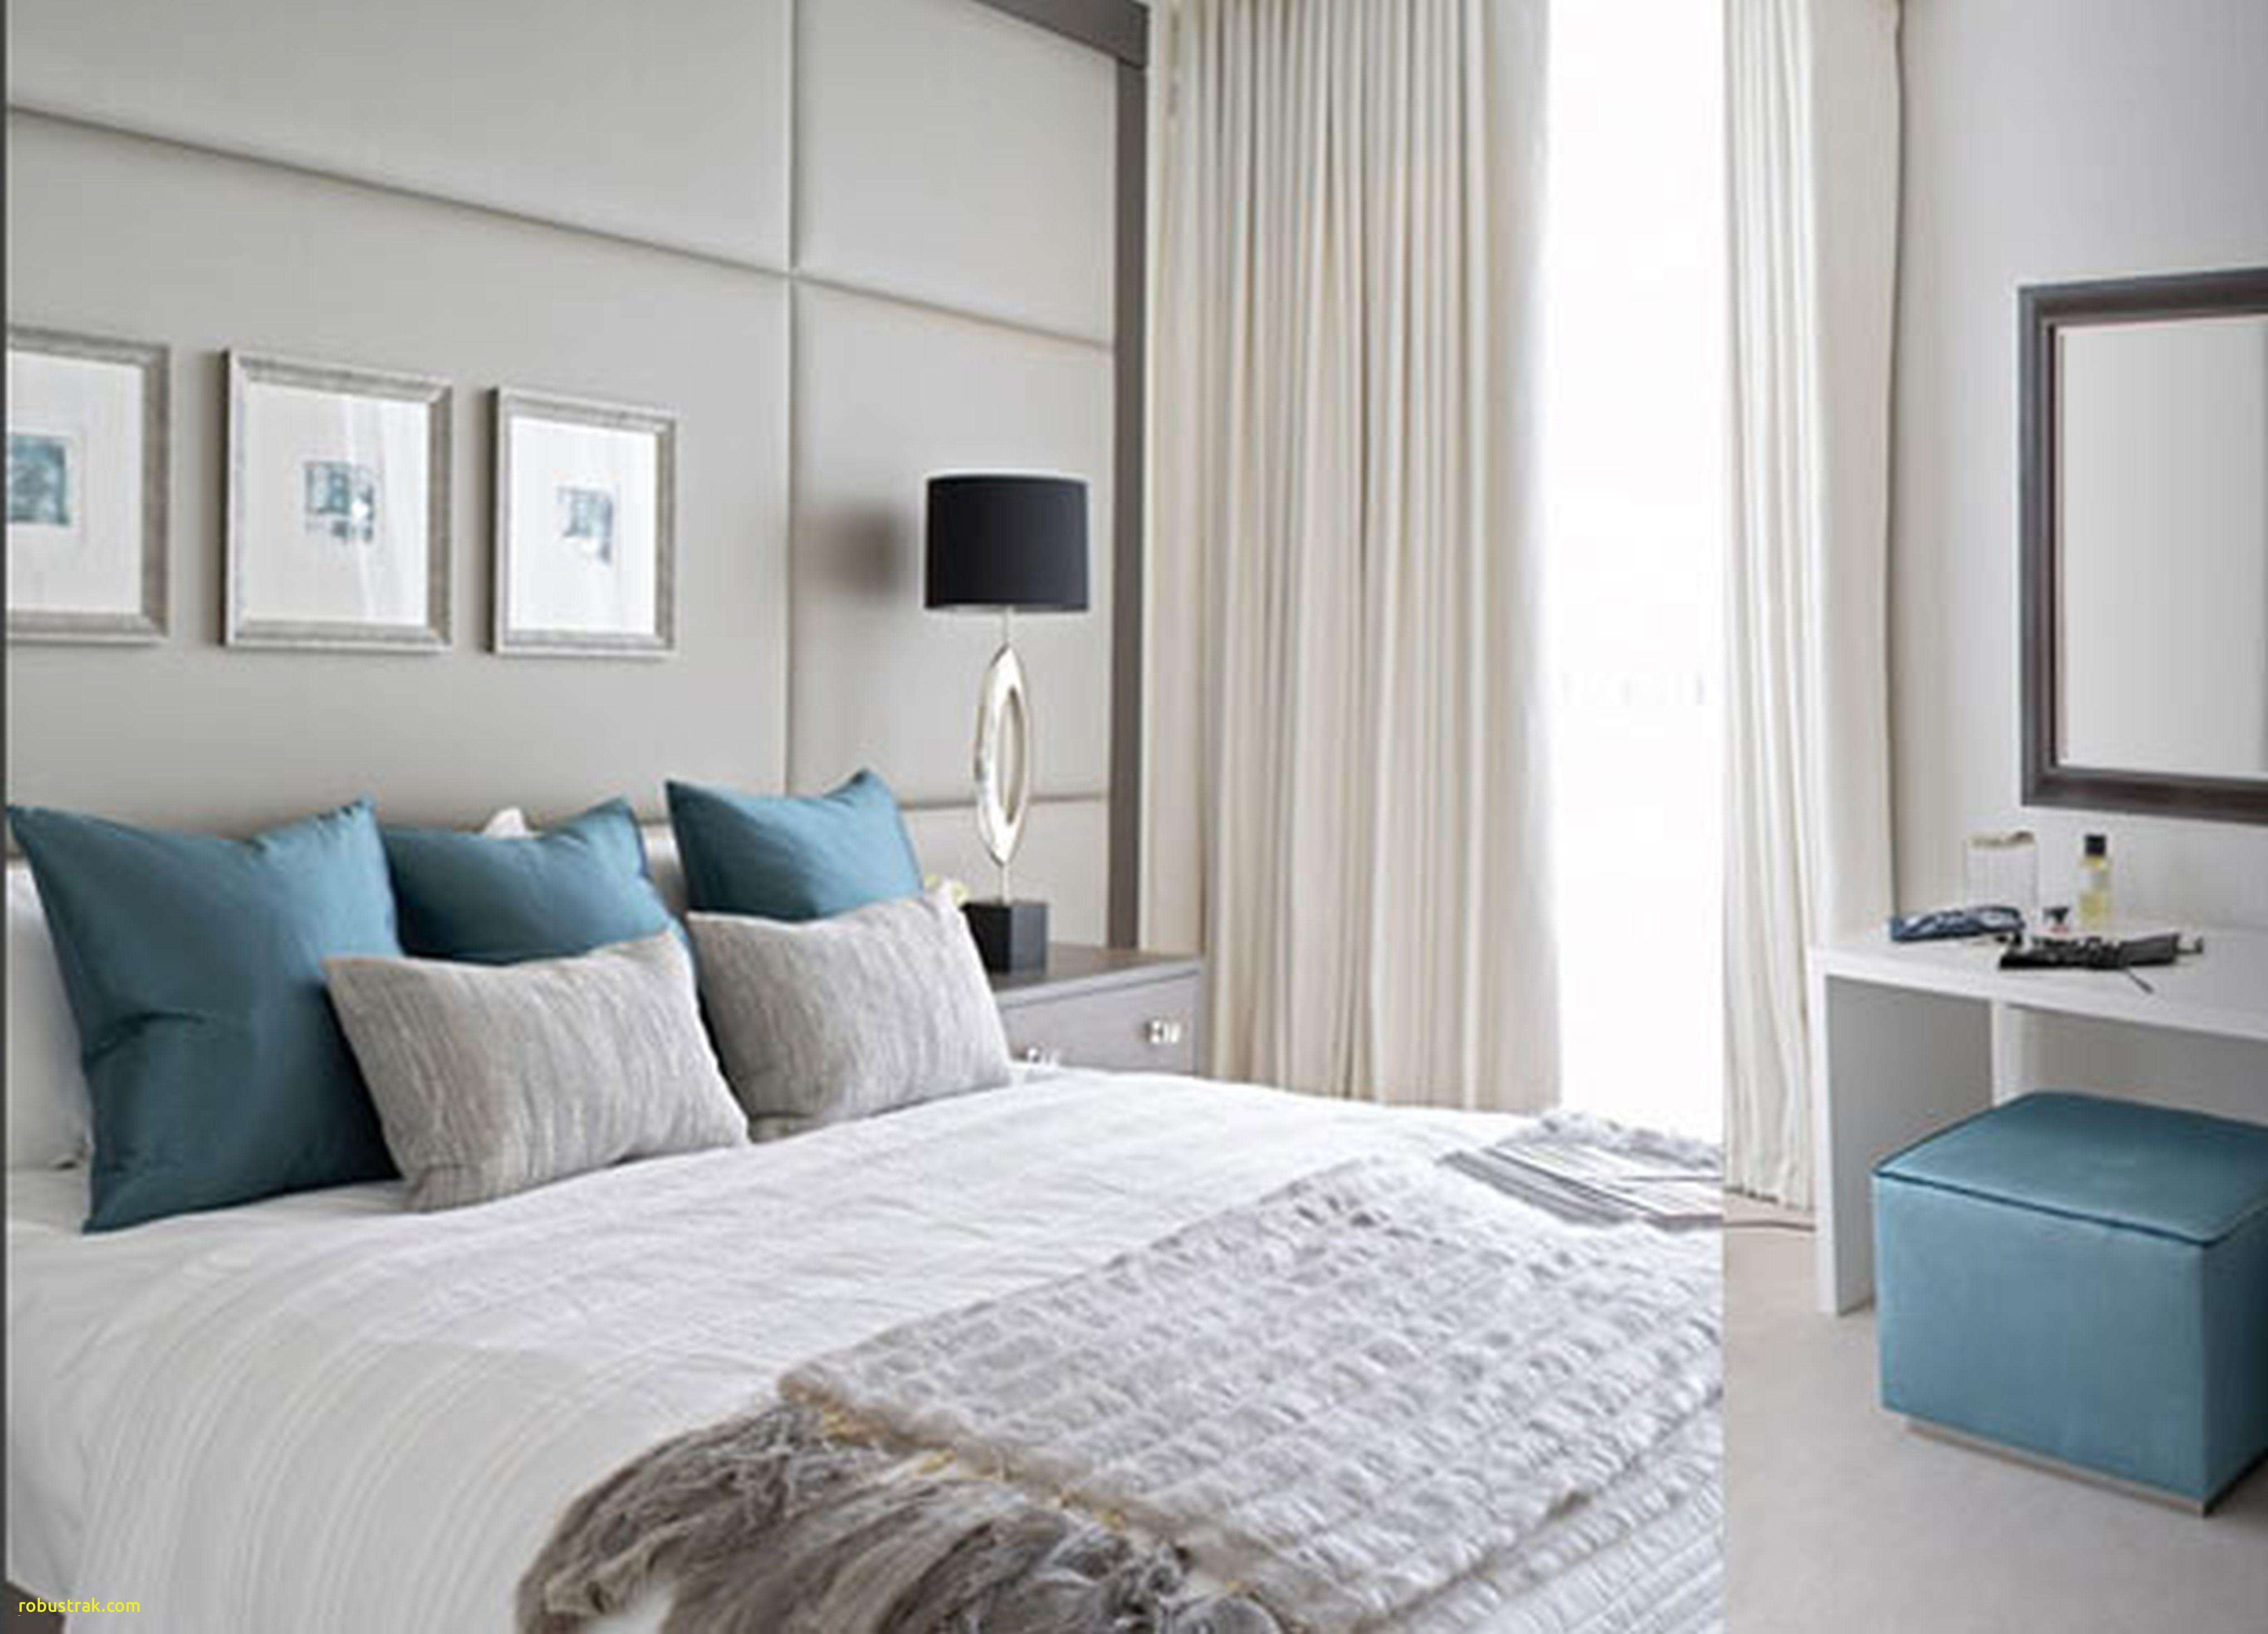 Best Bedroom Furniture Brands Lovely 18 Amazing Light Gray Hardwood Floors